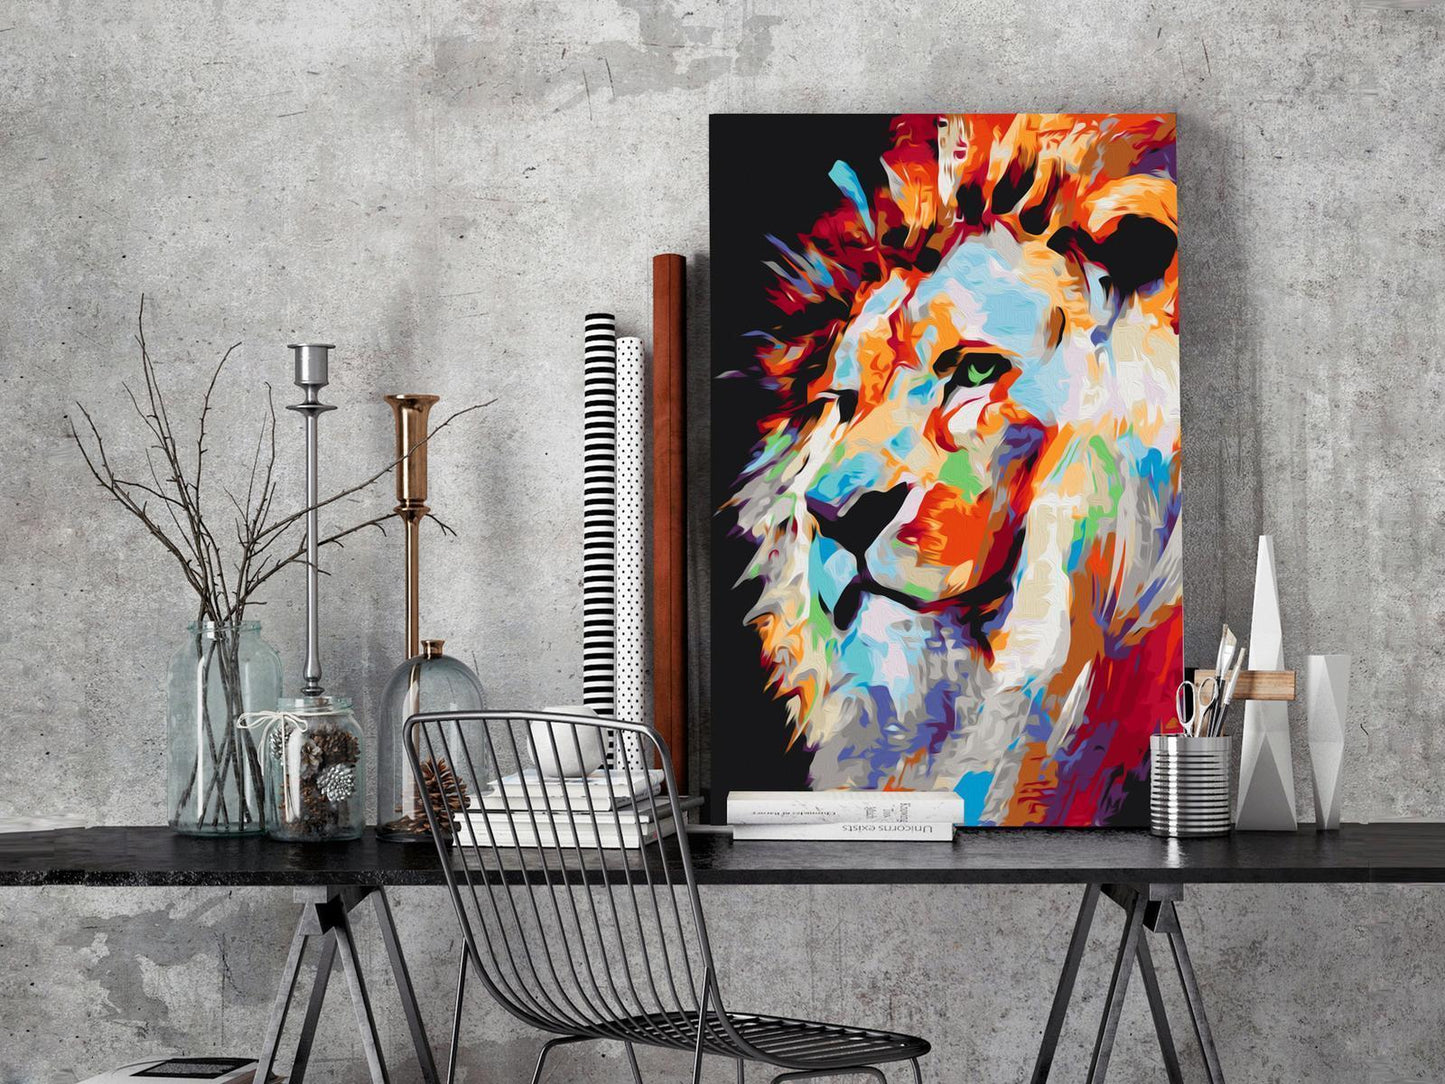 DIY-Gemälde auf Leinwand – Porträt eines bunten Löwen 